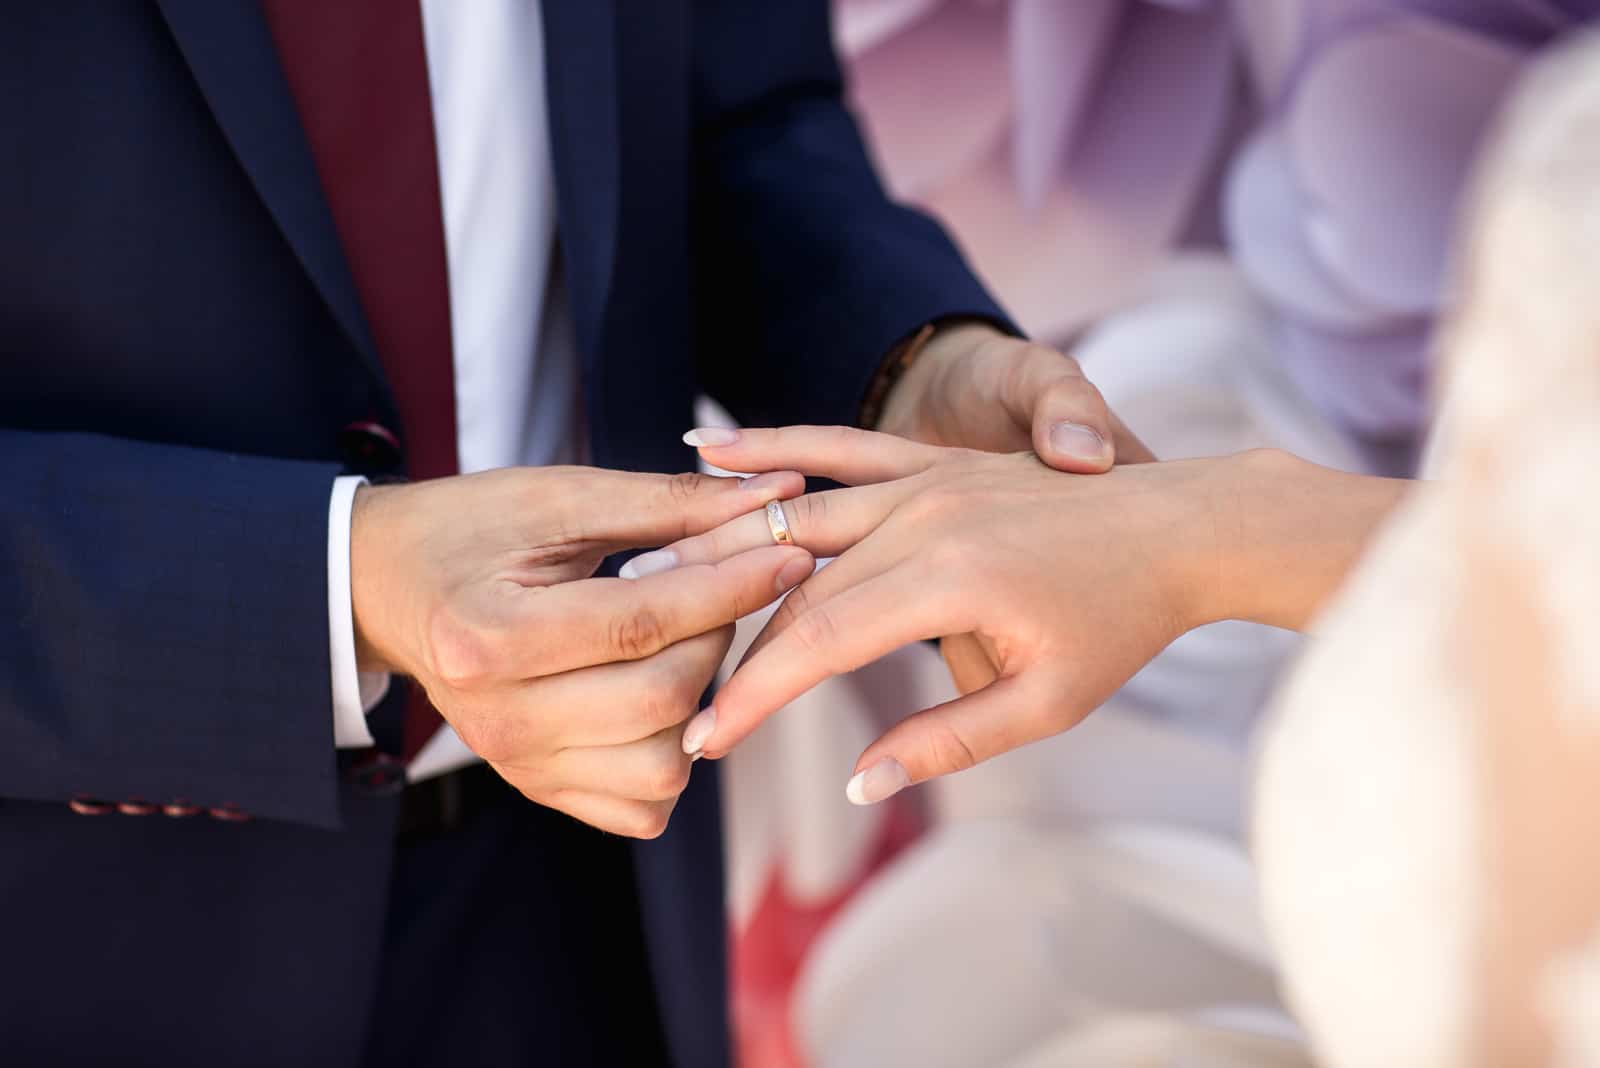 Hände von Braut und Bräutigam im feierlichen Prozess des Ringwechsels